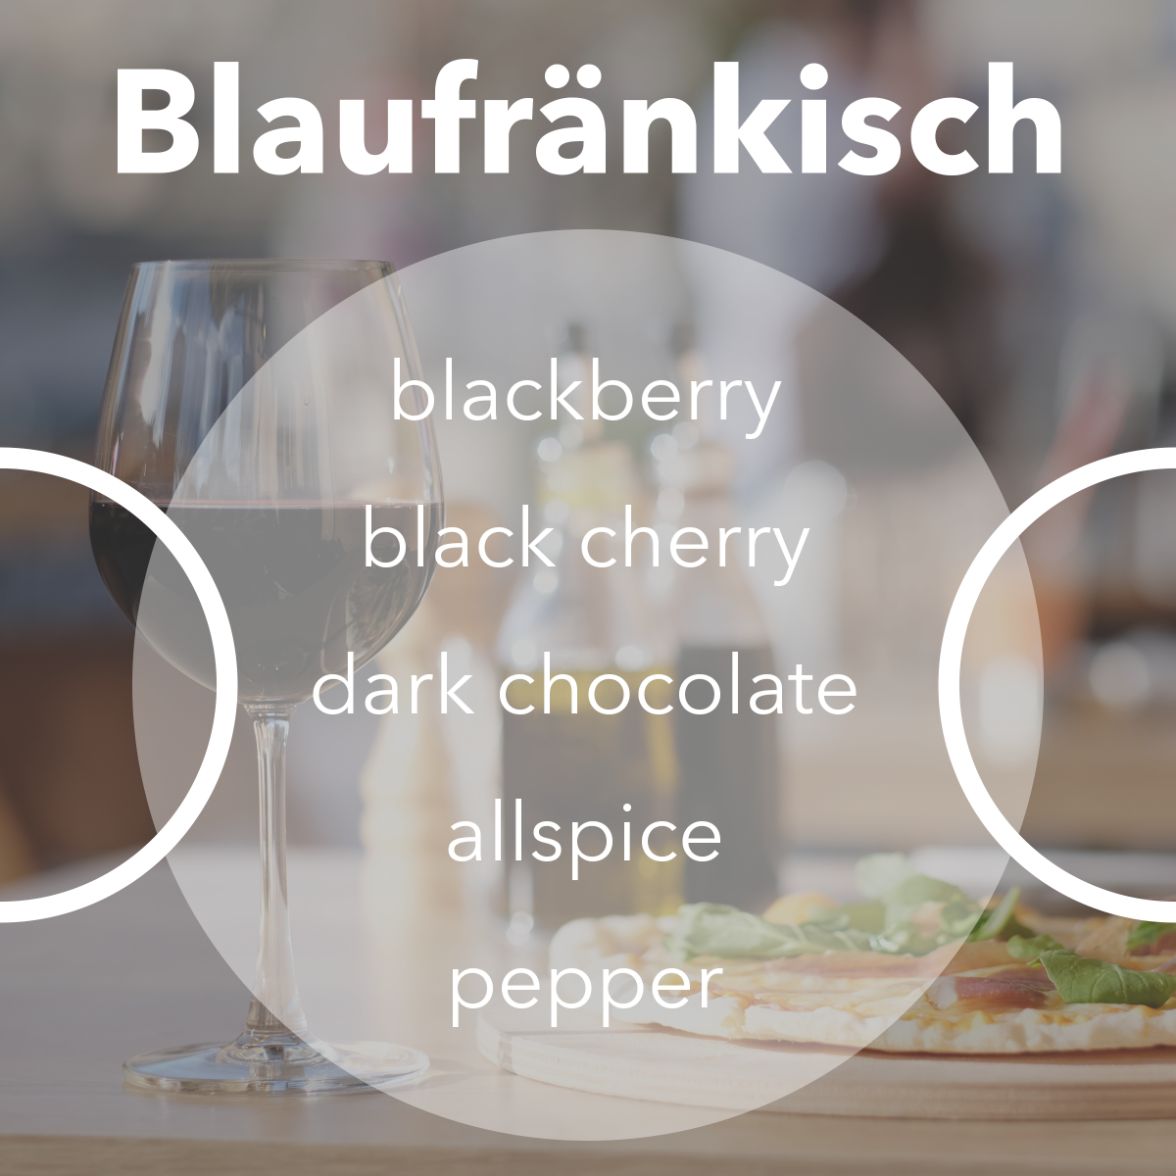 Blaufrankisch wine tasting notes.